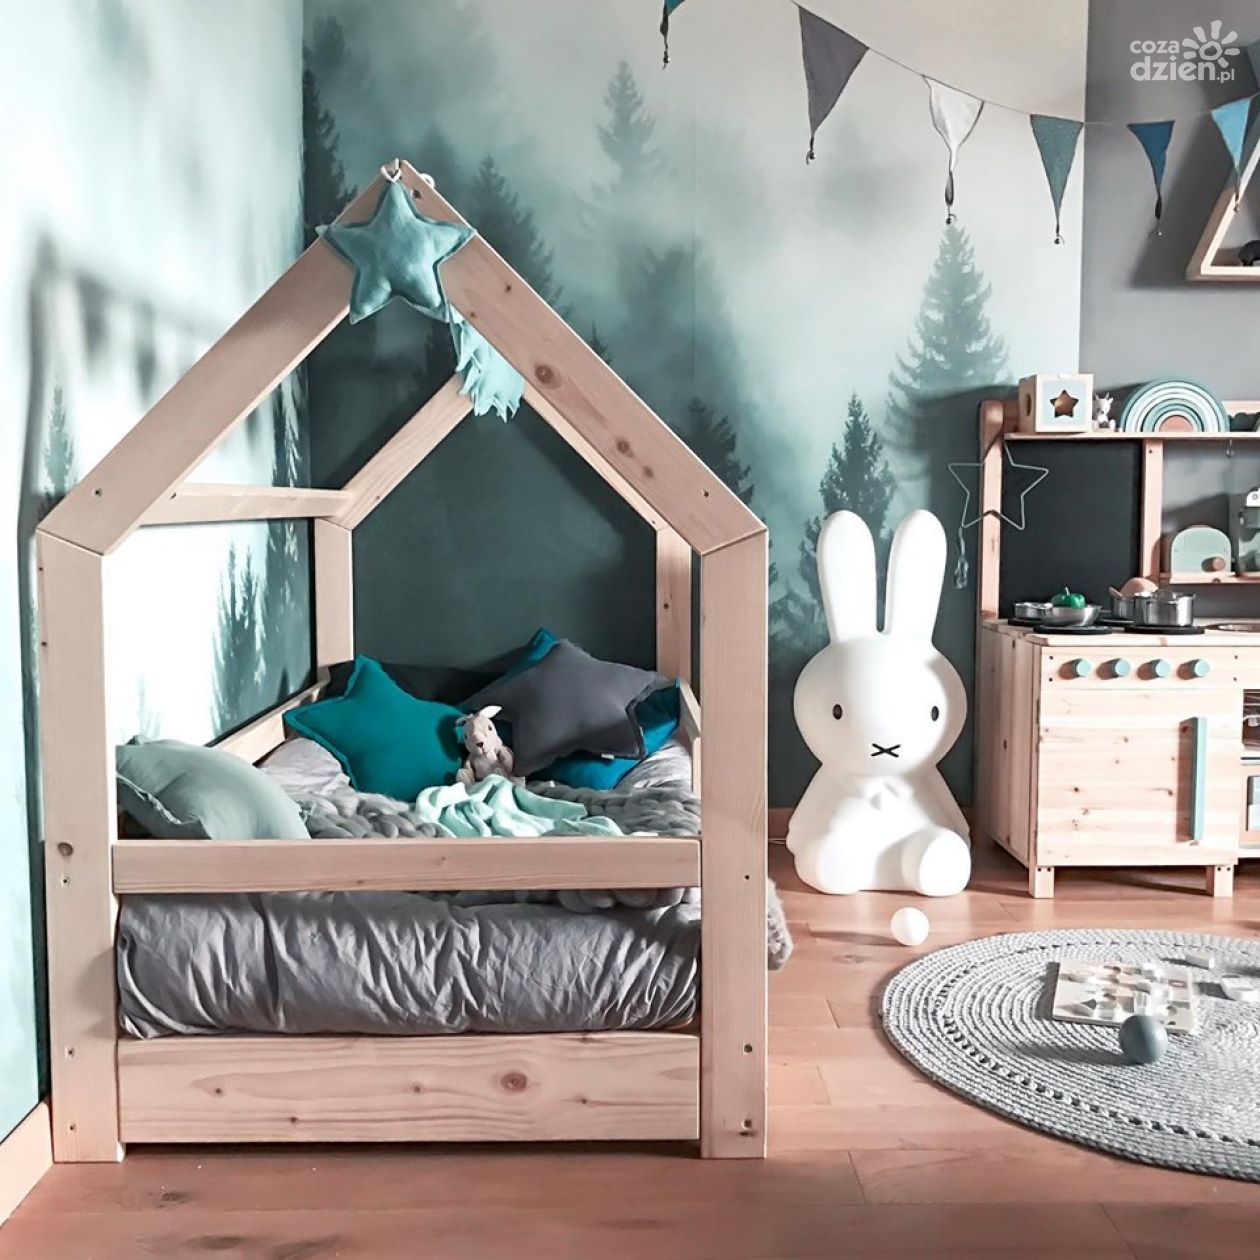 Łóżko domek -  inspiracje do pokoju dziecięcego